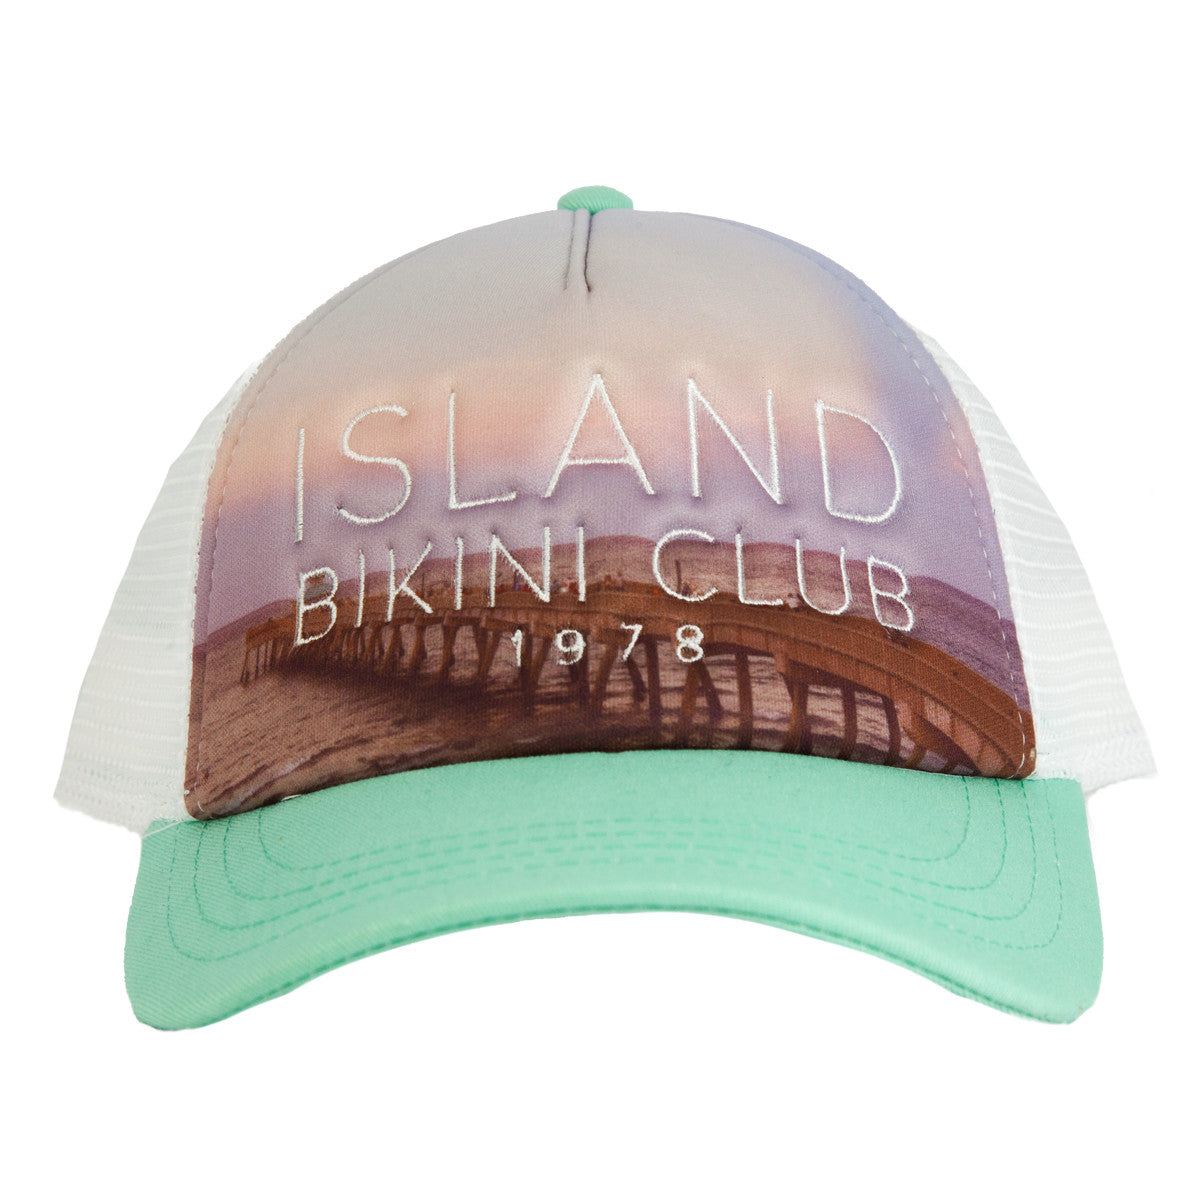 Island Water Sports Bikini Club Trucker Mint OS